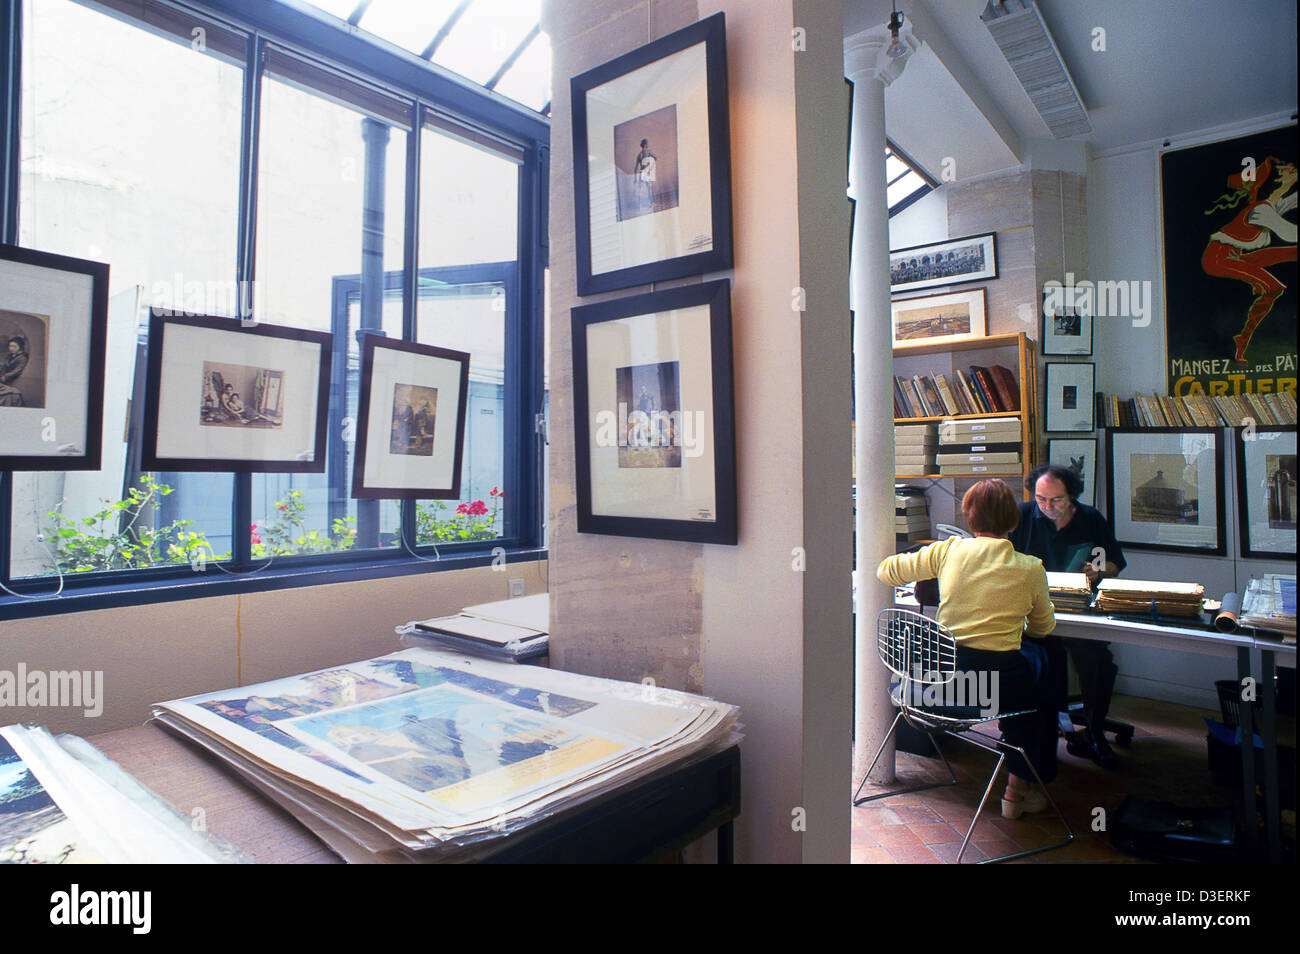 France, Paris, le marais de l'intérieur de 'a l'image du grenier sur l'eau' une boutique sur expecialized photos anciennes Banque D'Images